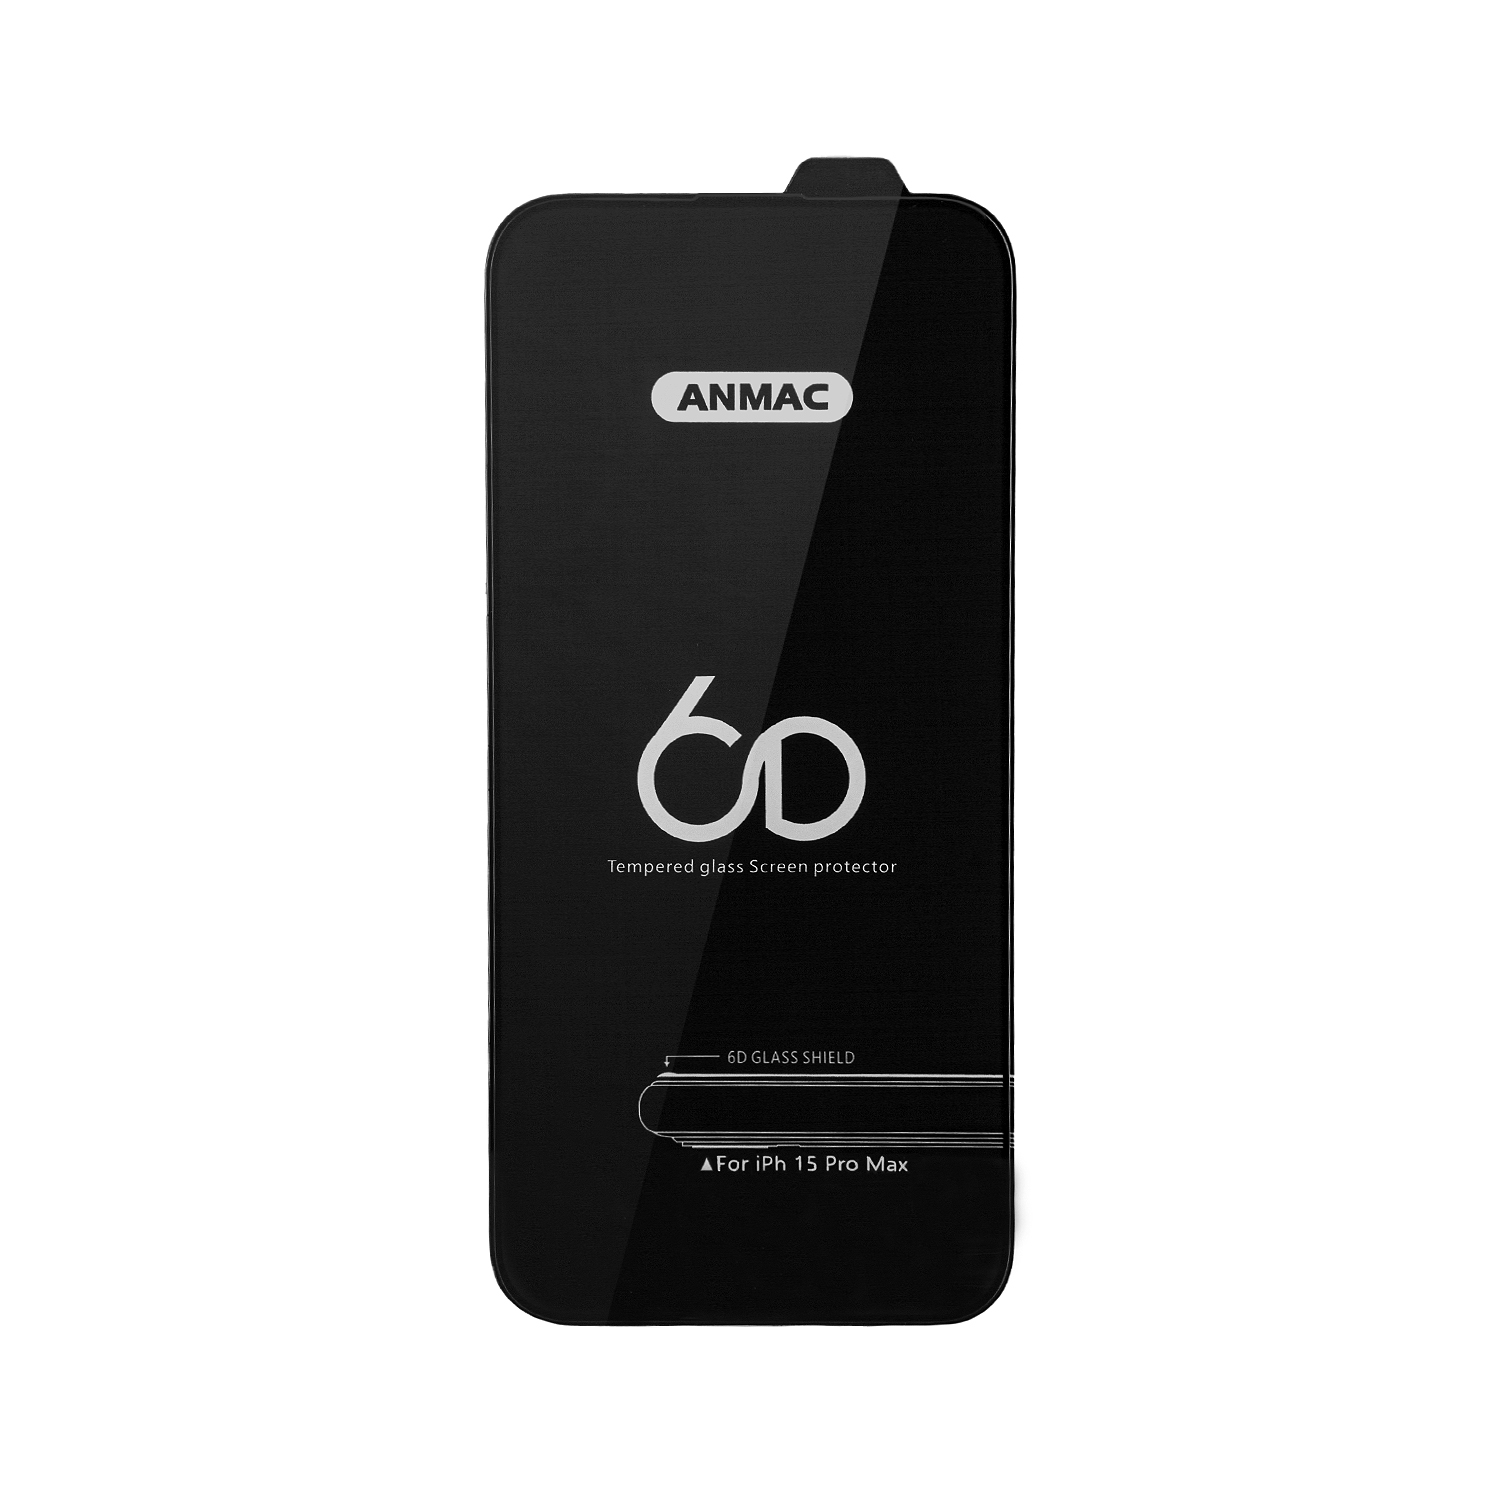 Защитное стекло iPh 15 Pro Max Anmac 6D Black без упаковки Арт.1137445